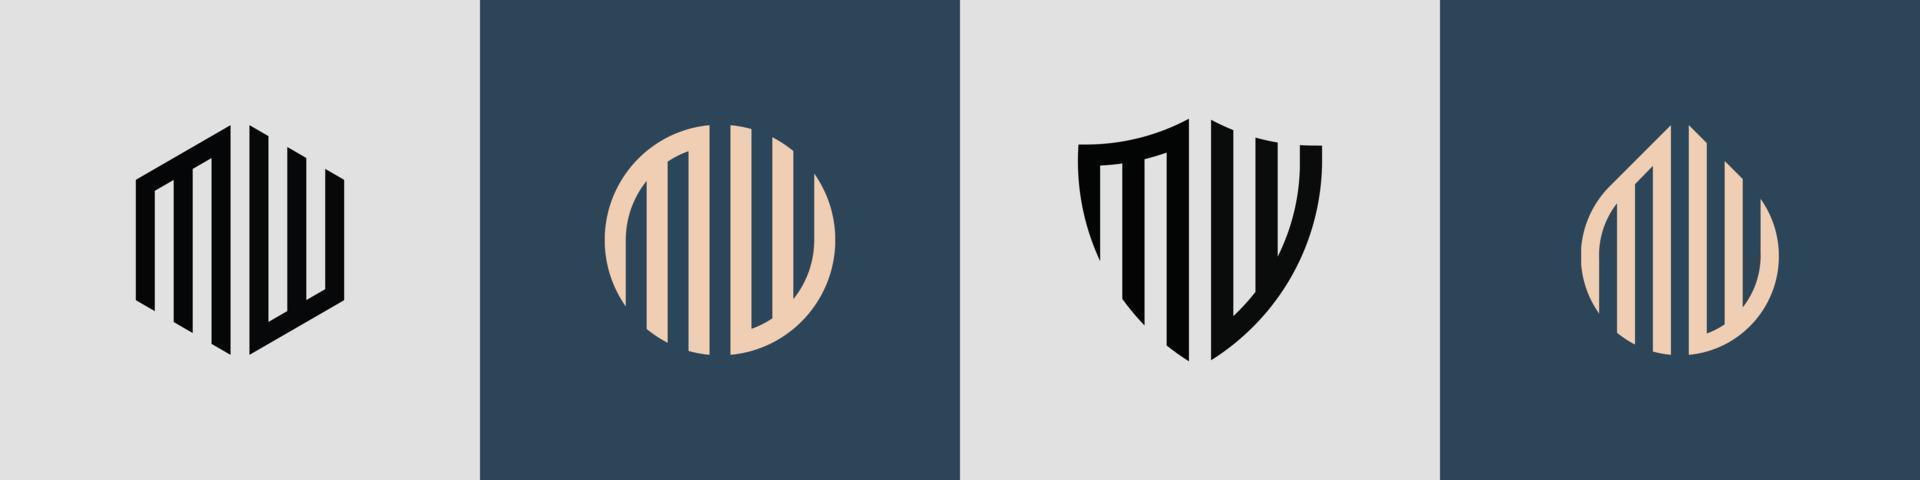 ensemble de conceptions de logo mw de lettres initiales simples créatives. vecteur